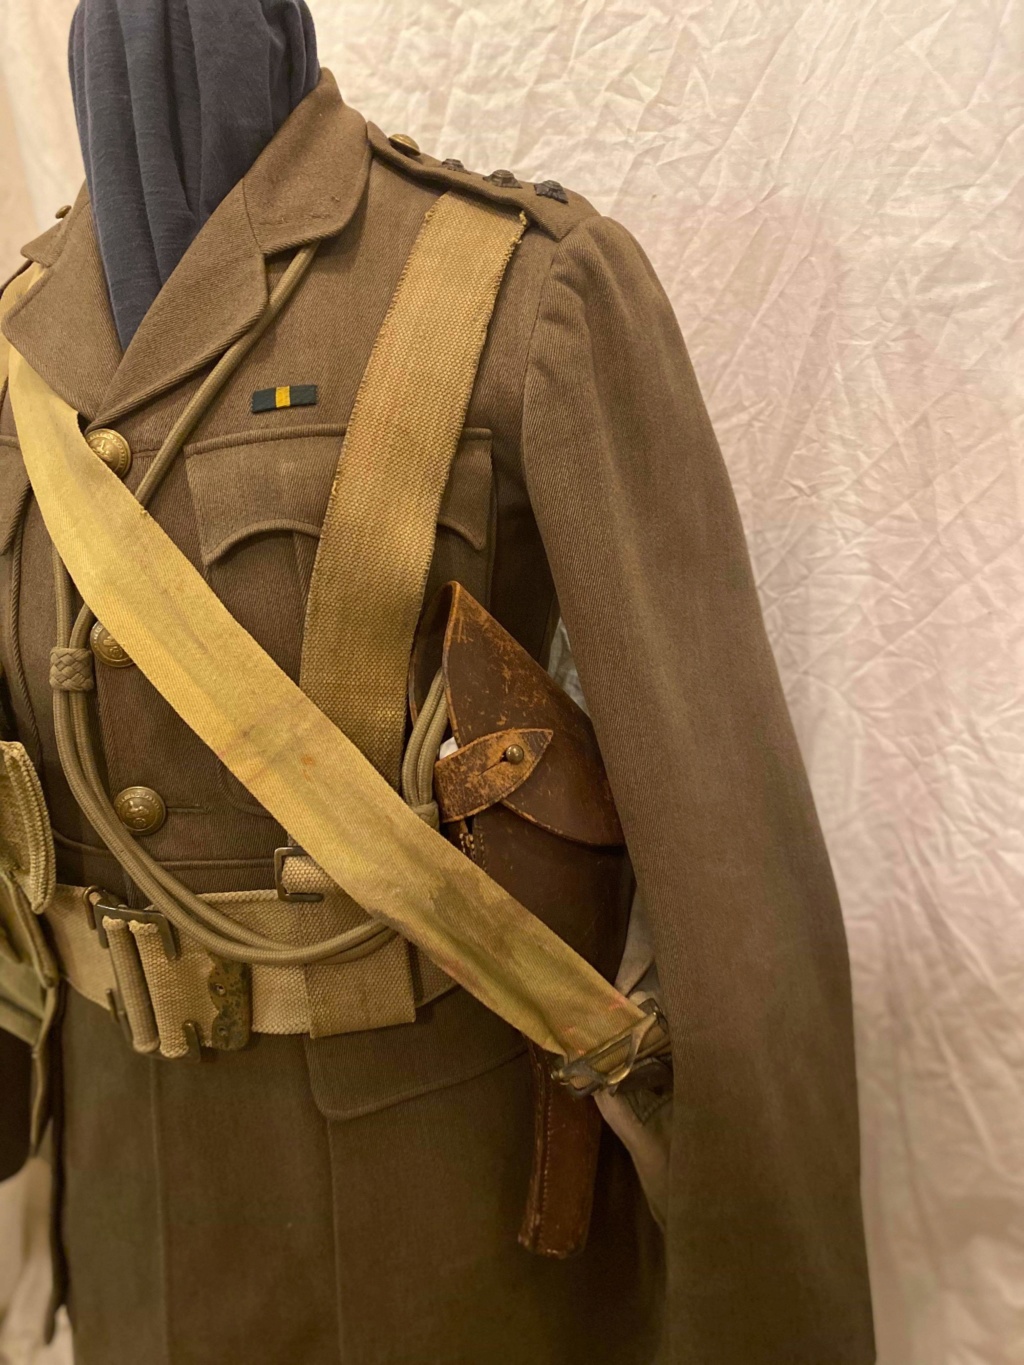 Vareuses et uniformes de l'officier britannique Receiv16